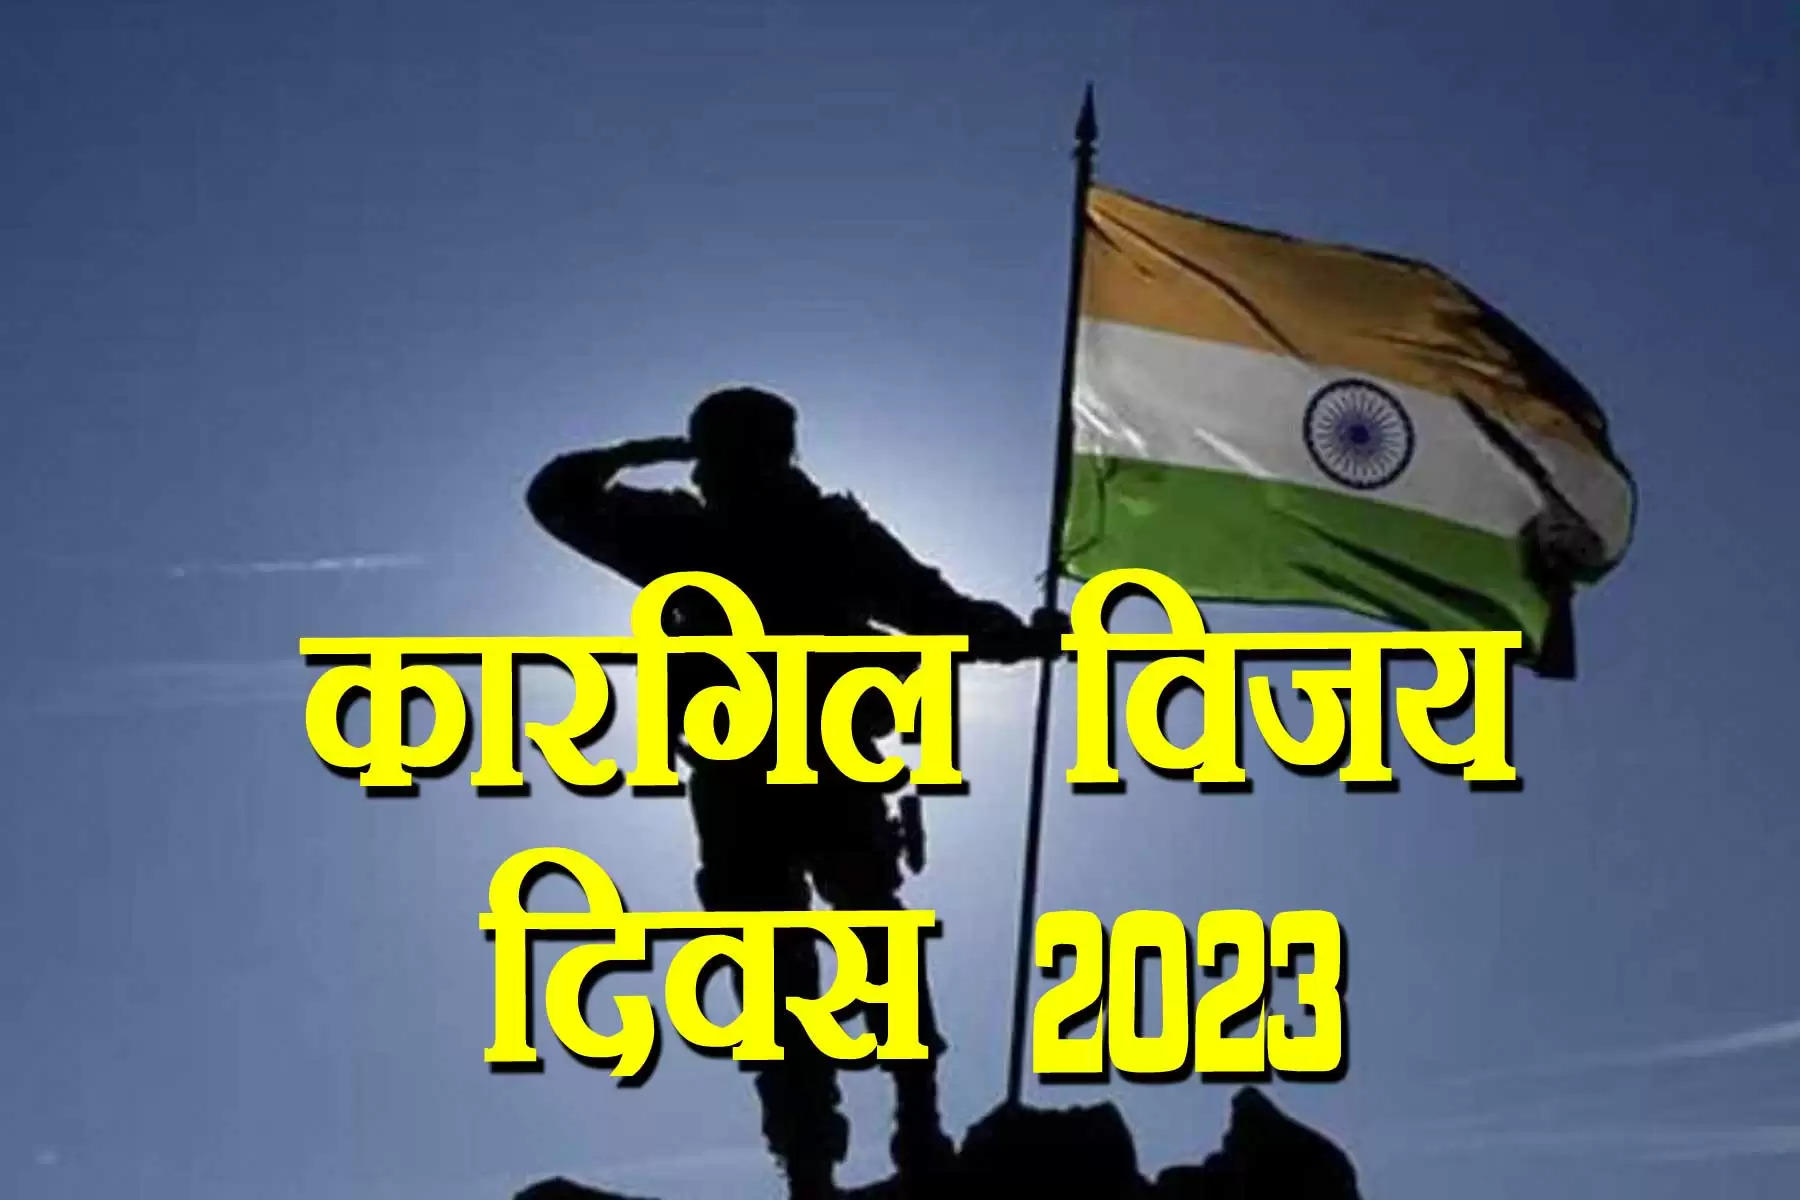 Kargil Vijay Diwas 2023: भारतीय सेना ने 26 जुलाई 1999 के दिन कारगिल की दुर्गम चोटियों पर से पाकिस्तानी घुसपैठियों को भगा दिया था। यह दुनिया की सबसे ऊंची जगह पर लाड़े जाने वाले युद्ध में से एक था। भारत हर साल इस दिन को कारगिल विजय दिवस के रूप में मनाता है।